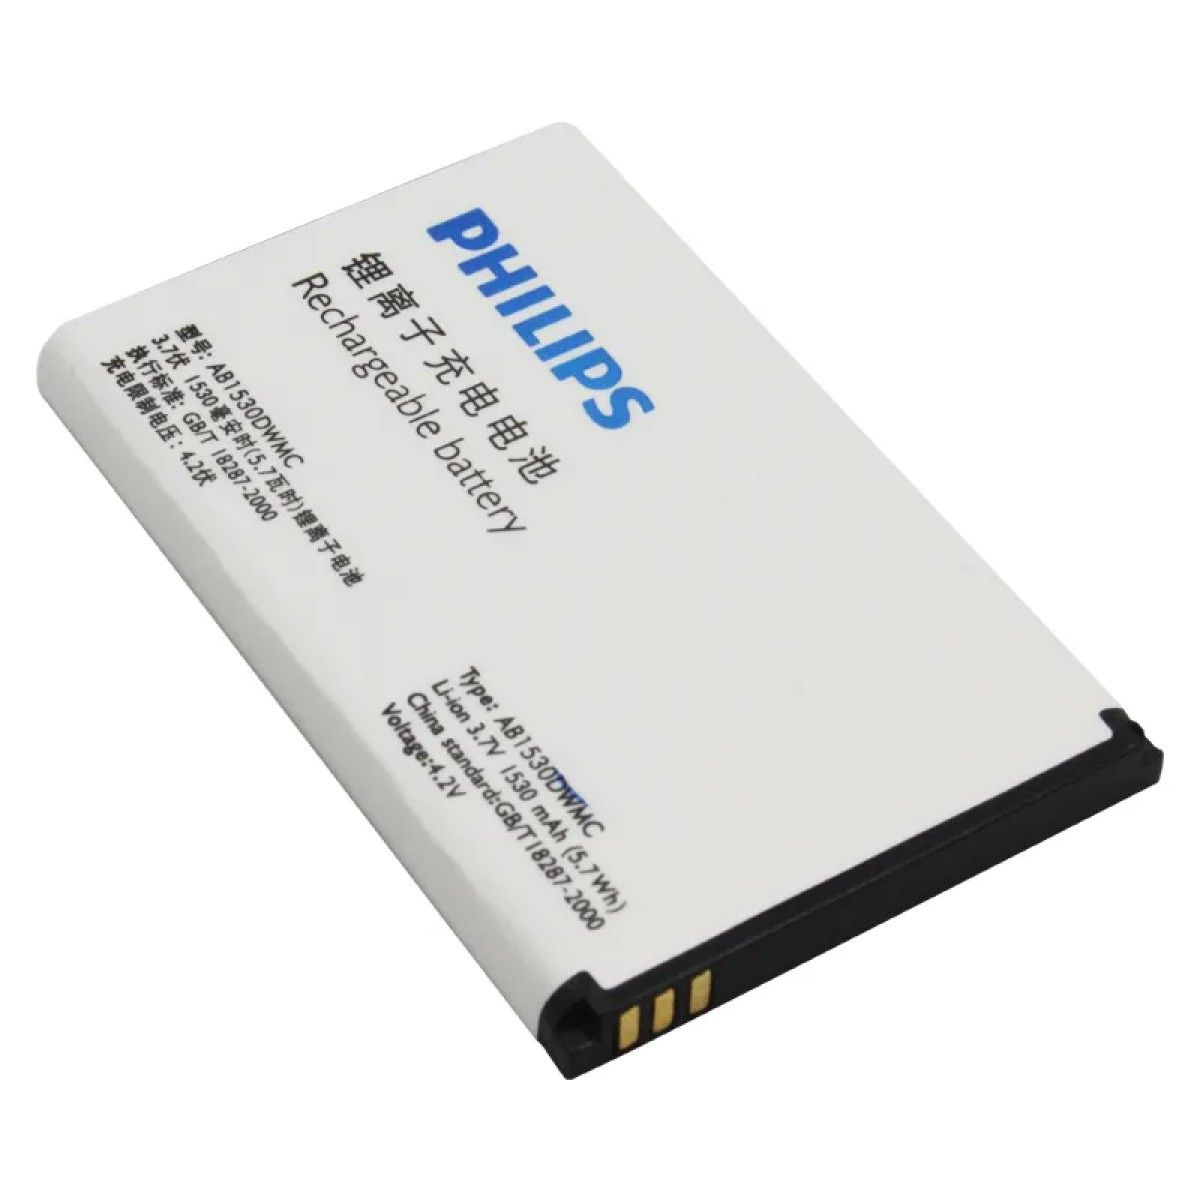 Аккумуляторы для телефонов philips. Philips ab1530dwmc аккумулятор. АКБ Philips ab3100awmt. Philips Xenium x2301 аккумулятор. Аккумулятор ab4000fwm Philips.